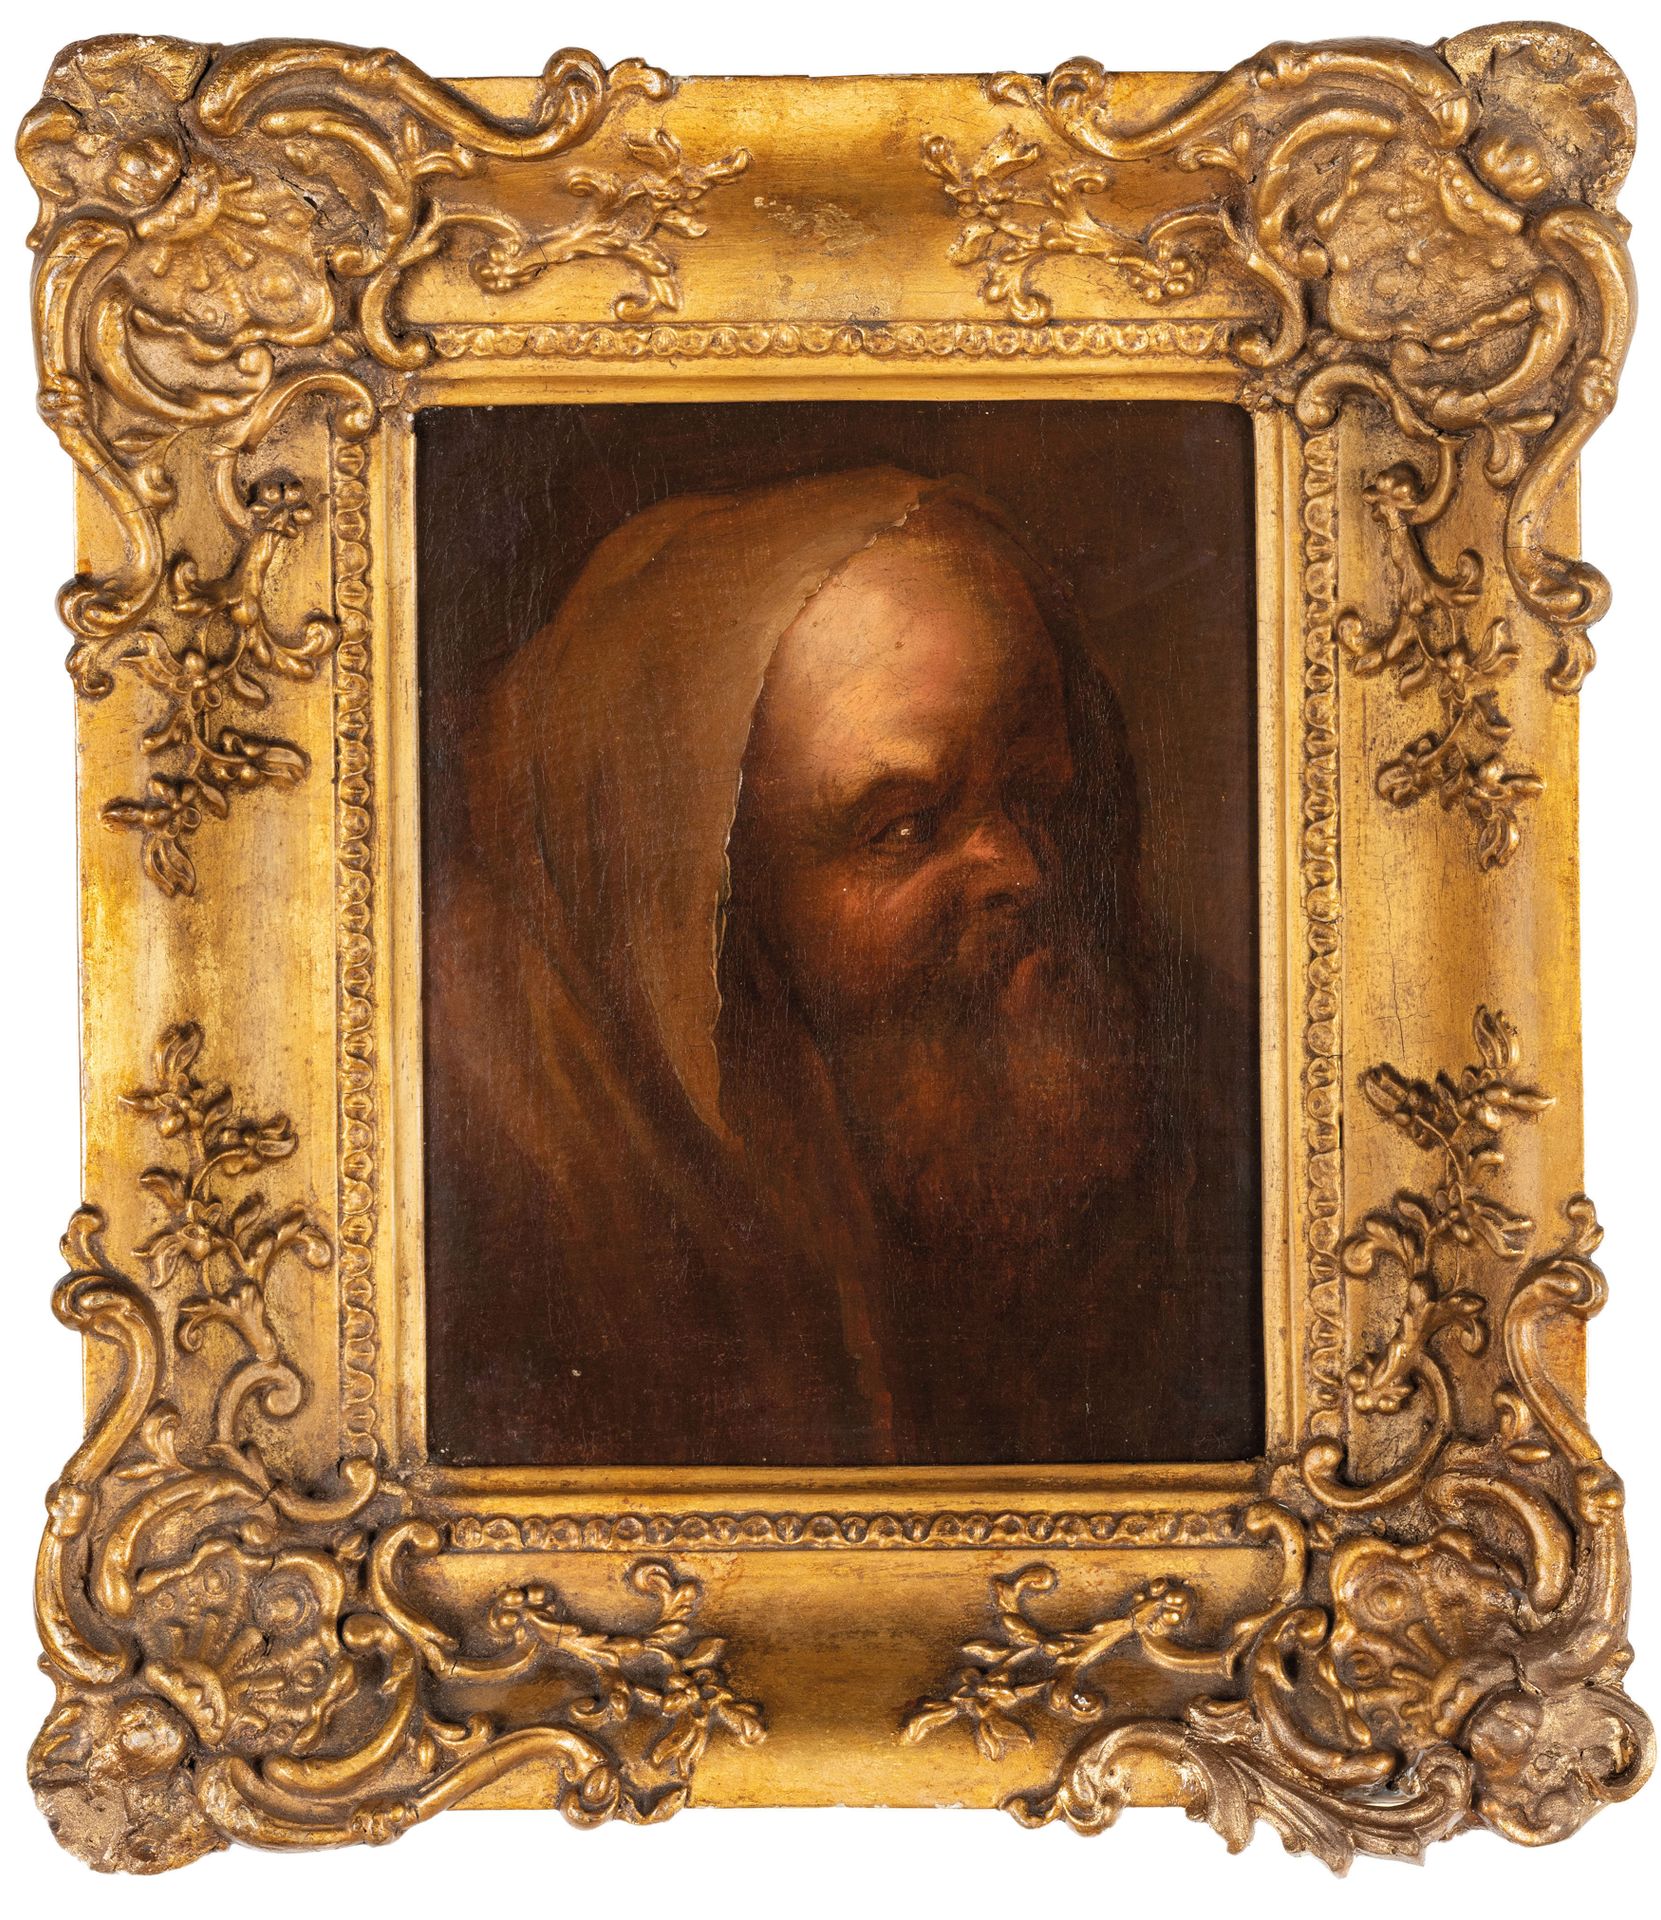 PITTORE DEL XVII-XVIII SECOLO Retrato 
Óleo sobre lienzo, 23X19 cm